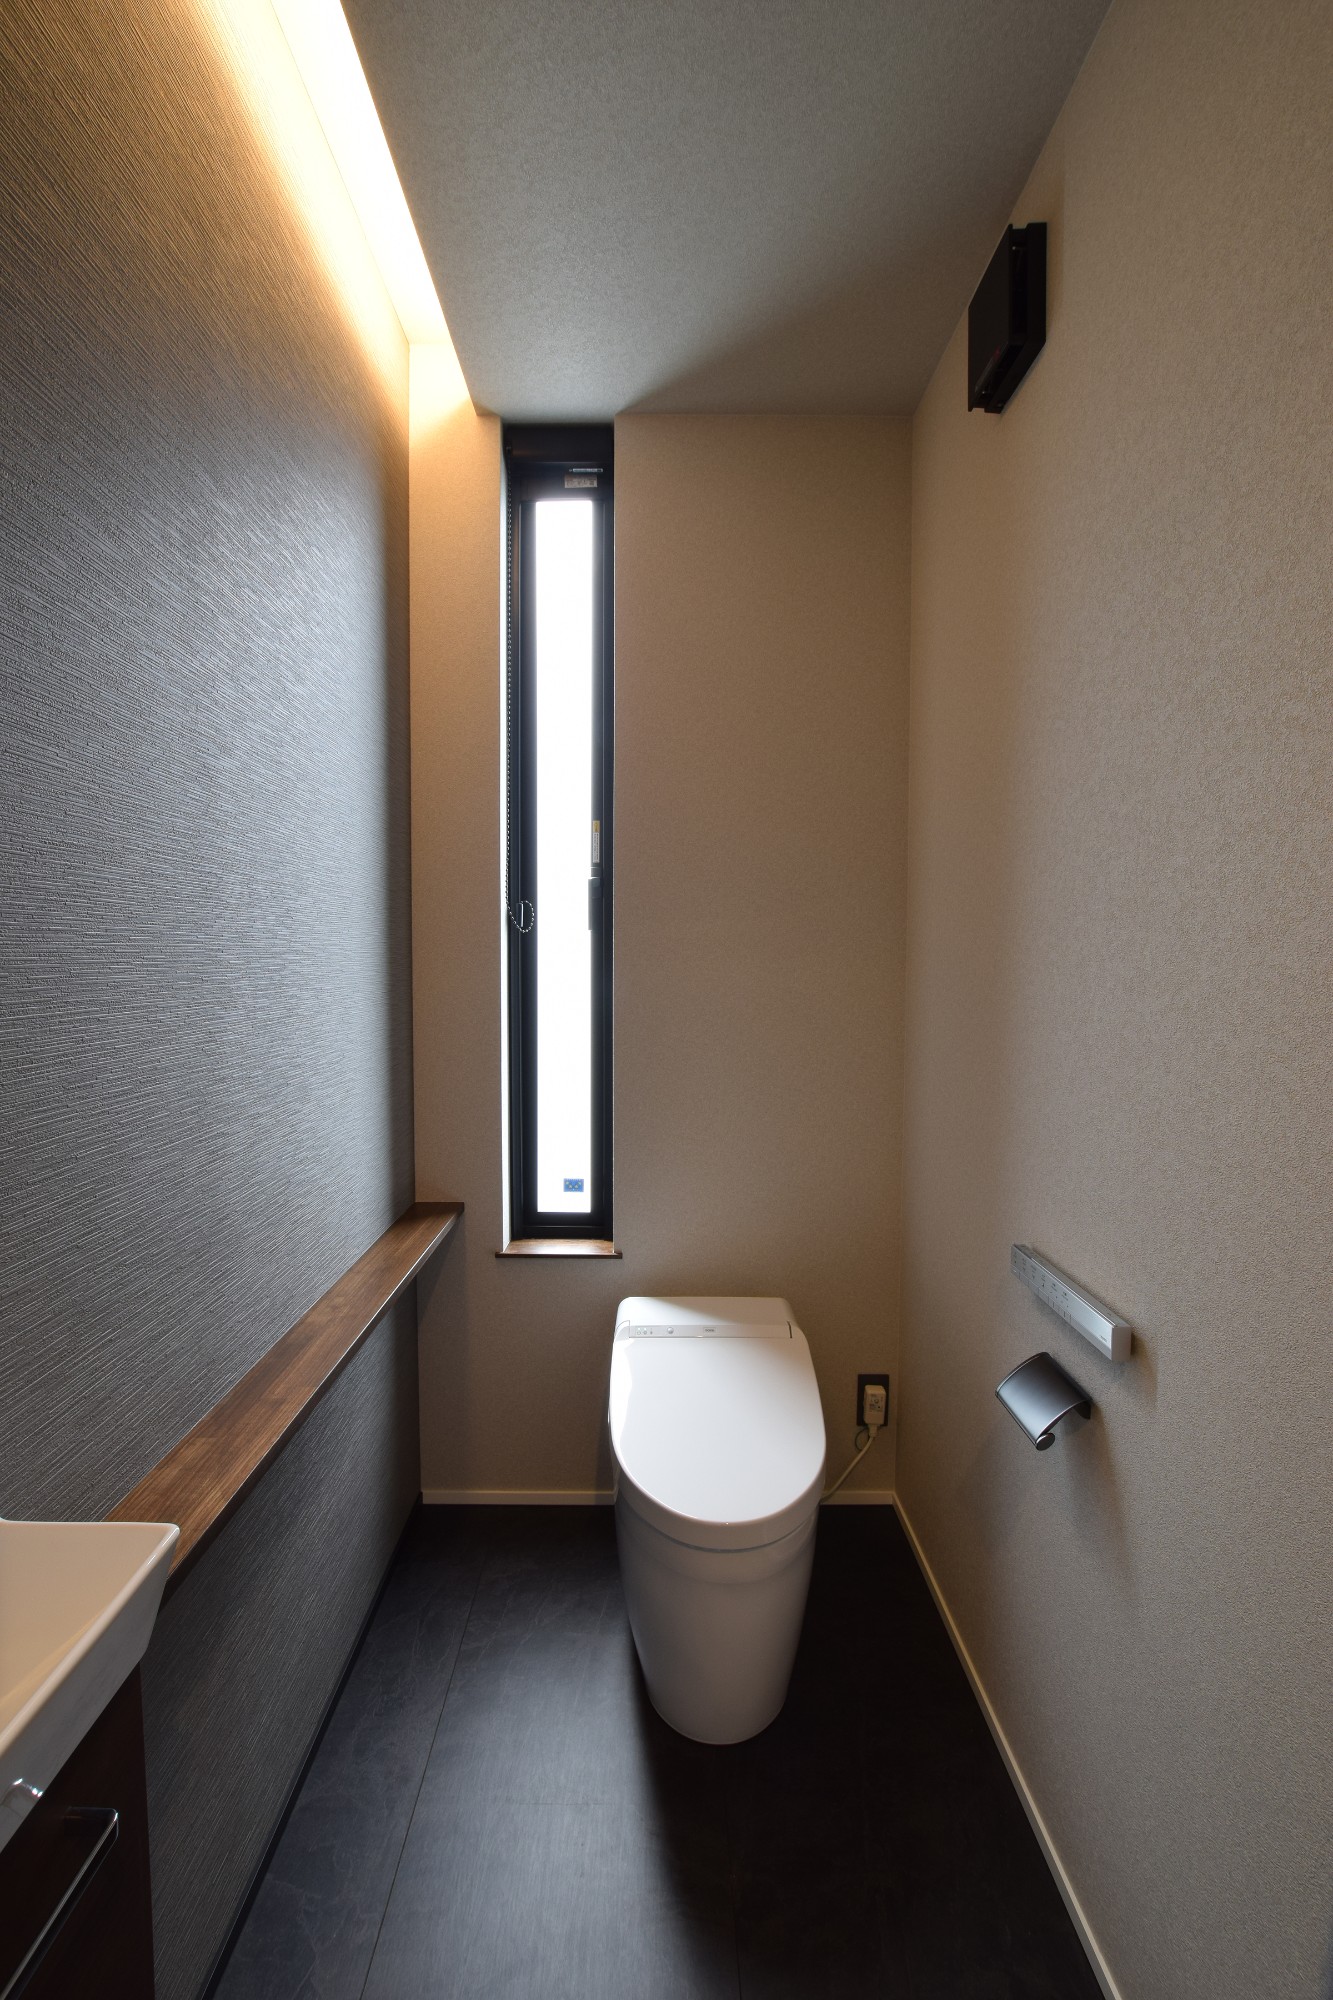 間接照明とモノトーンでまとめたシックなトイレ空間